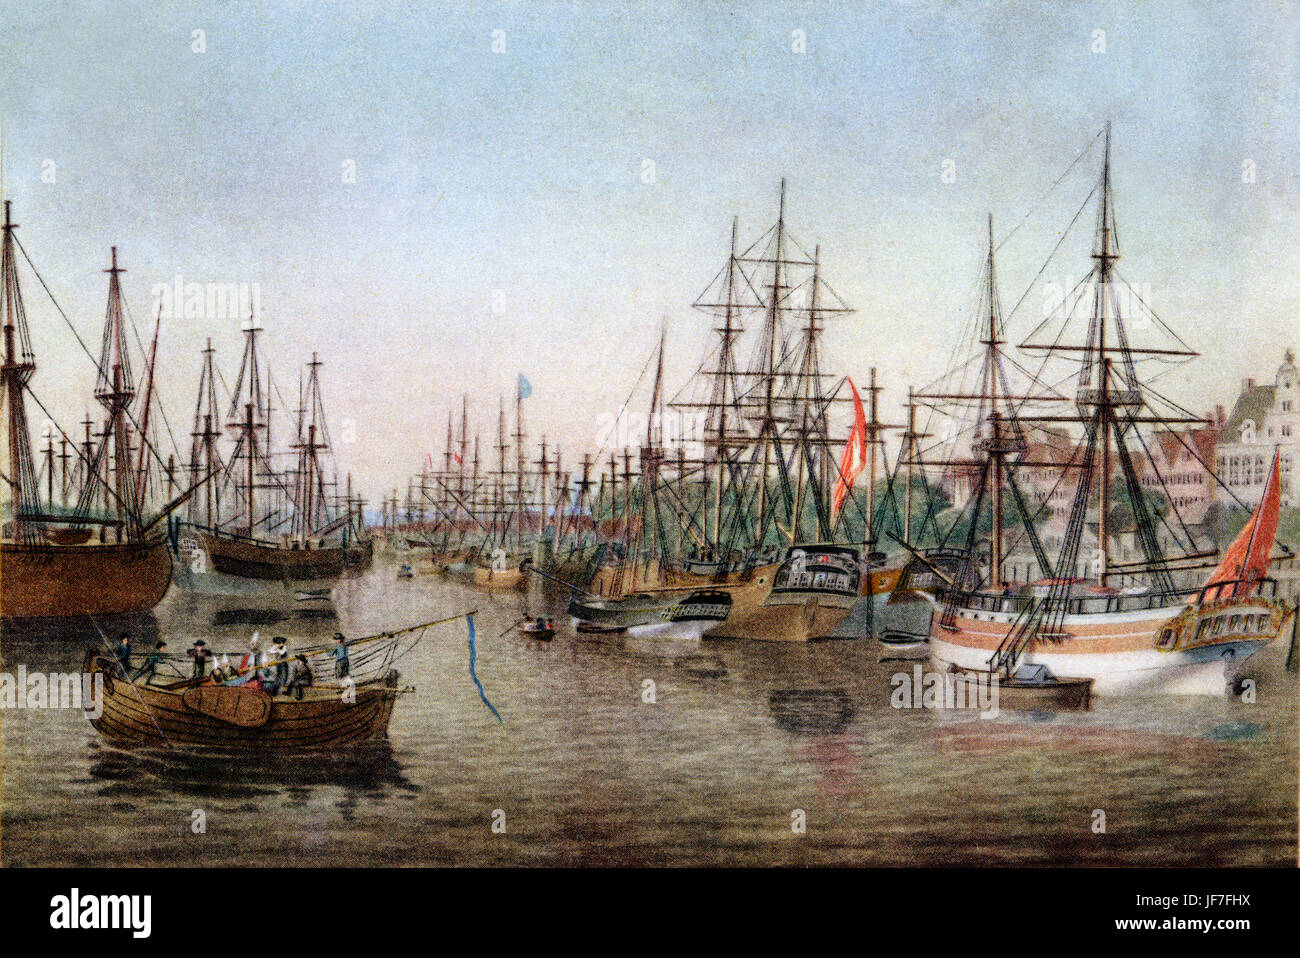 Binnenhafen, der älteste Teil des Hamburger Hafens. Nach dem Aquarell von Cornelius Suhr, c. 1820. CS: 1781-1857 Stockfoto